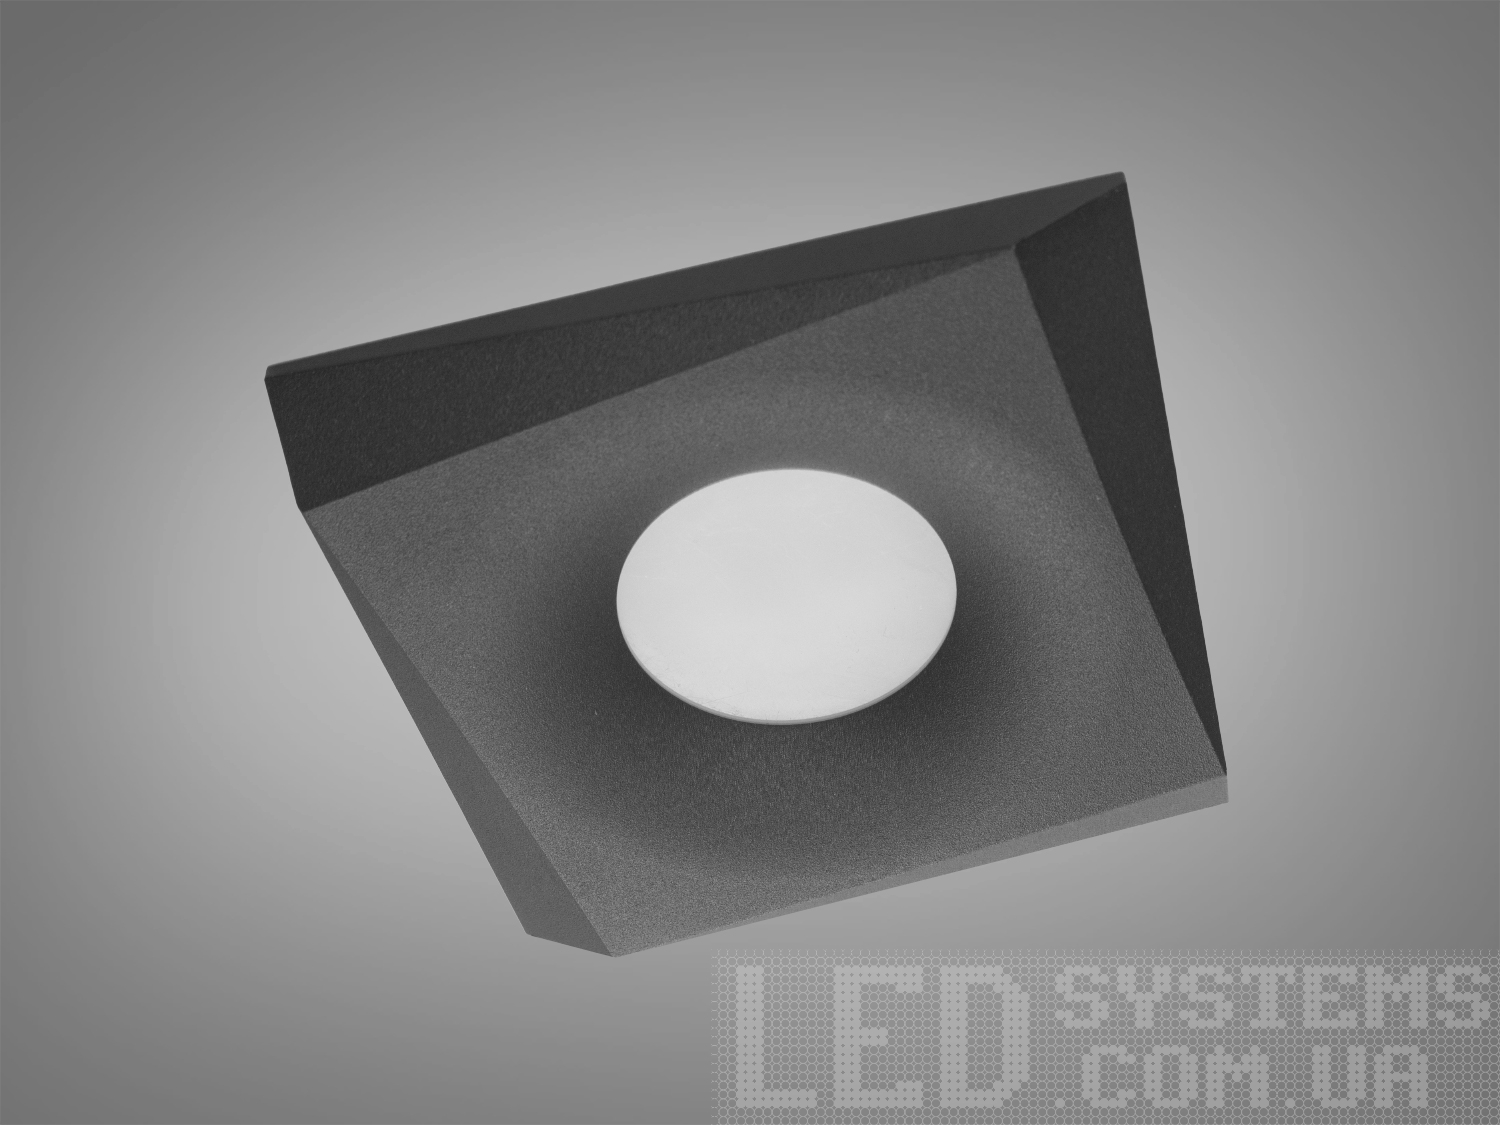 Нова серія точкових світильників дозволить зробити Вашу квартиру стильною та сучасною. Дані світильники ідеально підходять для світлодіодних ламп, які забезпечують найкращі параметри освітлення та енергозбереження, дозволяючи дизайнеру інтер'єру можливість для креативу. 
Точковий світильник - це спеціальний вбудований світильник, який використовується для спрямованого або загального підсвічування певних ділянок Вашої квартири. Їх застосовують на кухні, у ванній кімнаті, для освітлення сходів та у житлових кімнатах. При рівномірному розподілі різних джерел світла (наприклад: люстра в центрі кімнати + точкові світильники по краю стелі) ви можете досягти ефекту відсутності тіні і зорово збільшити простір кімнати. Куди б Ви не подивилися, точкові світильники будуть висвітлювати простір перед Вами та всі предмети, що Вас оточують. 
Алюмінієві світильники не схильні до корозії, добре відводять тепло від лампи. 
Лампа до комплекту не входить.
 